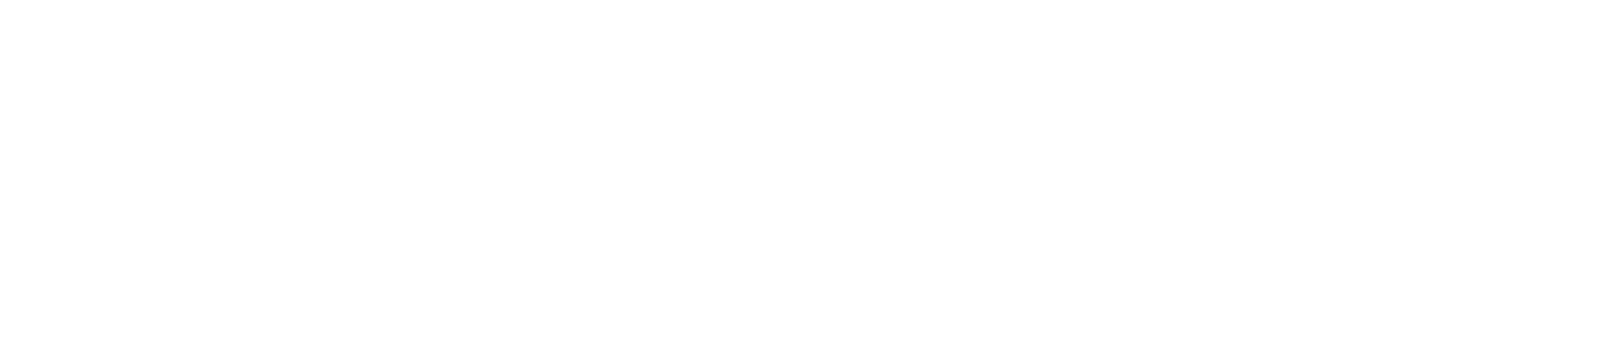 Yokosuka Bon Odori Festival 2023